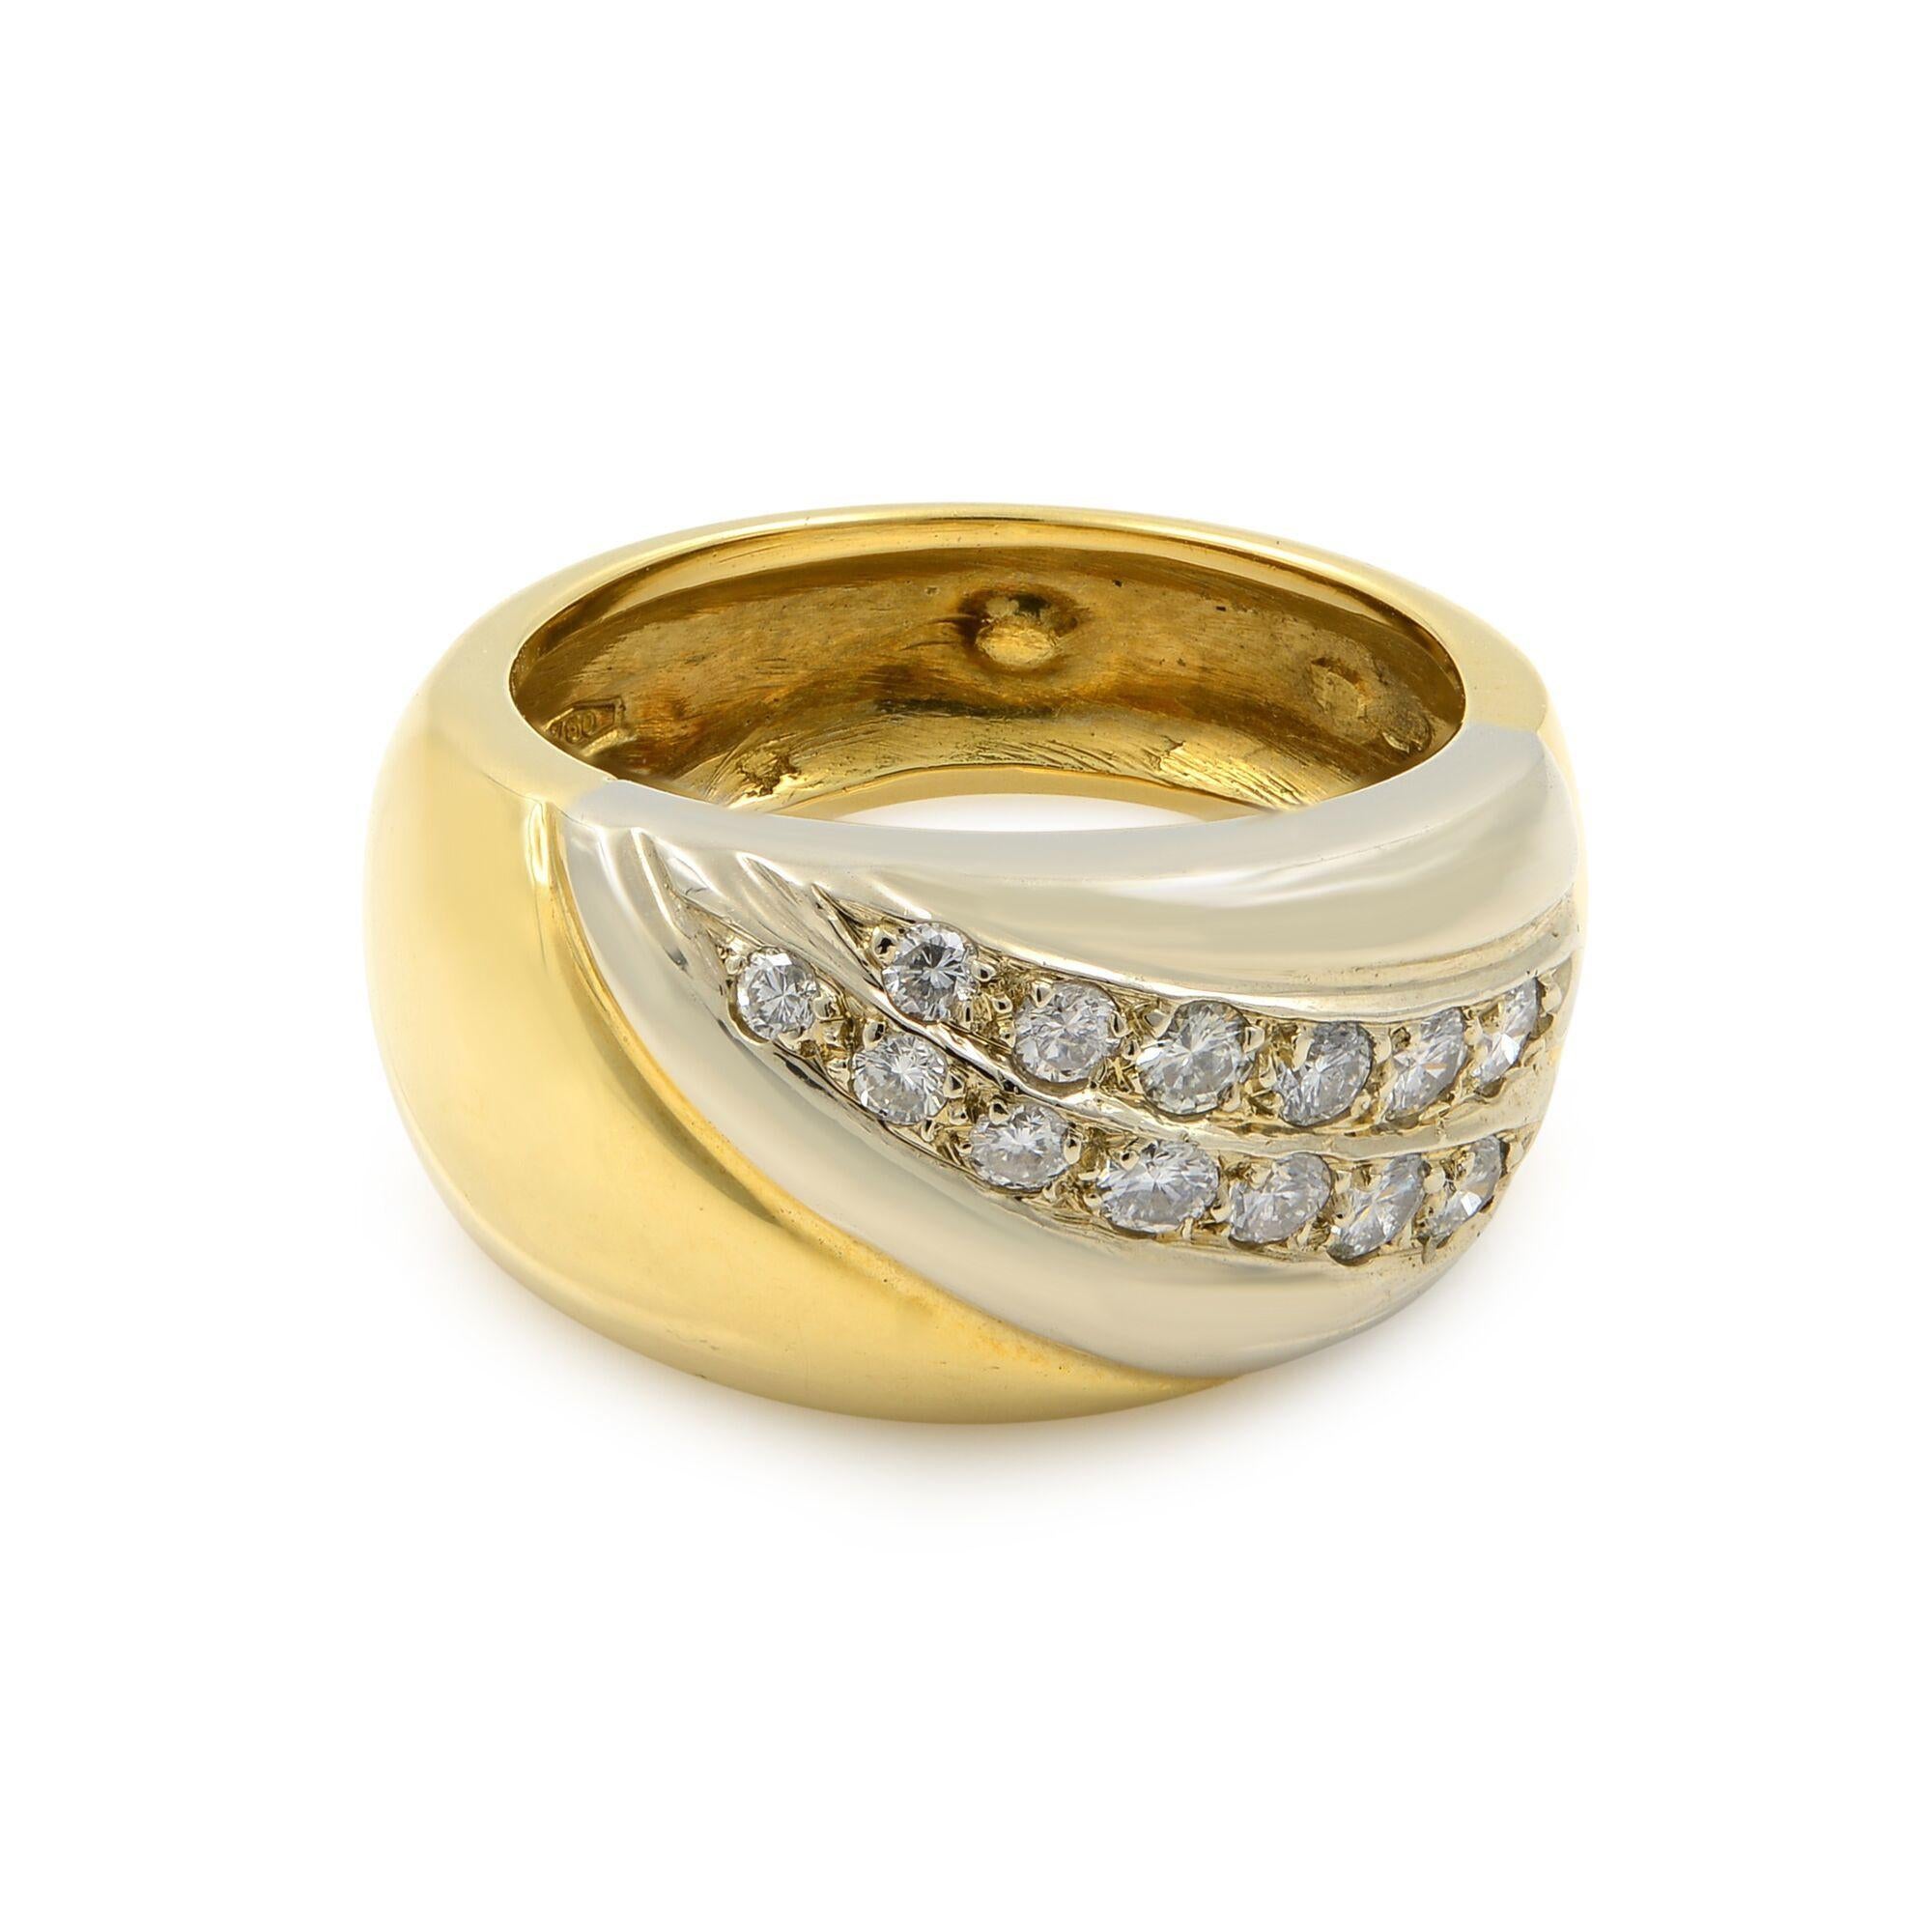 Notre large bracelet à diamants en or 18 carats est réalisé en or bicolore. Il s'agit d'un mélange attrayant d'or jaune lisse et d'or blanc poli qui a été incrusté de diamants ronds de taille brillante. Les diamants s'enroulent presque autour de